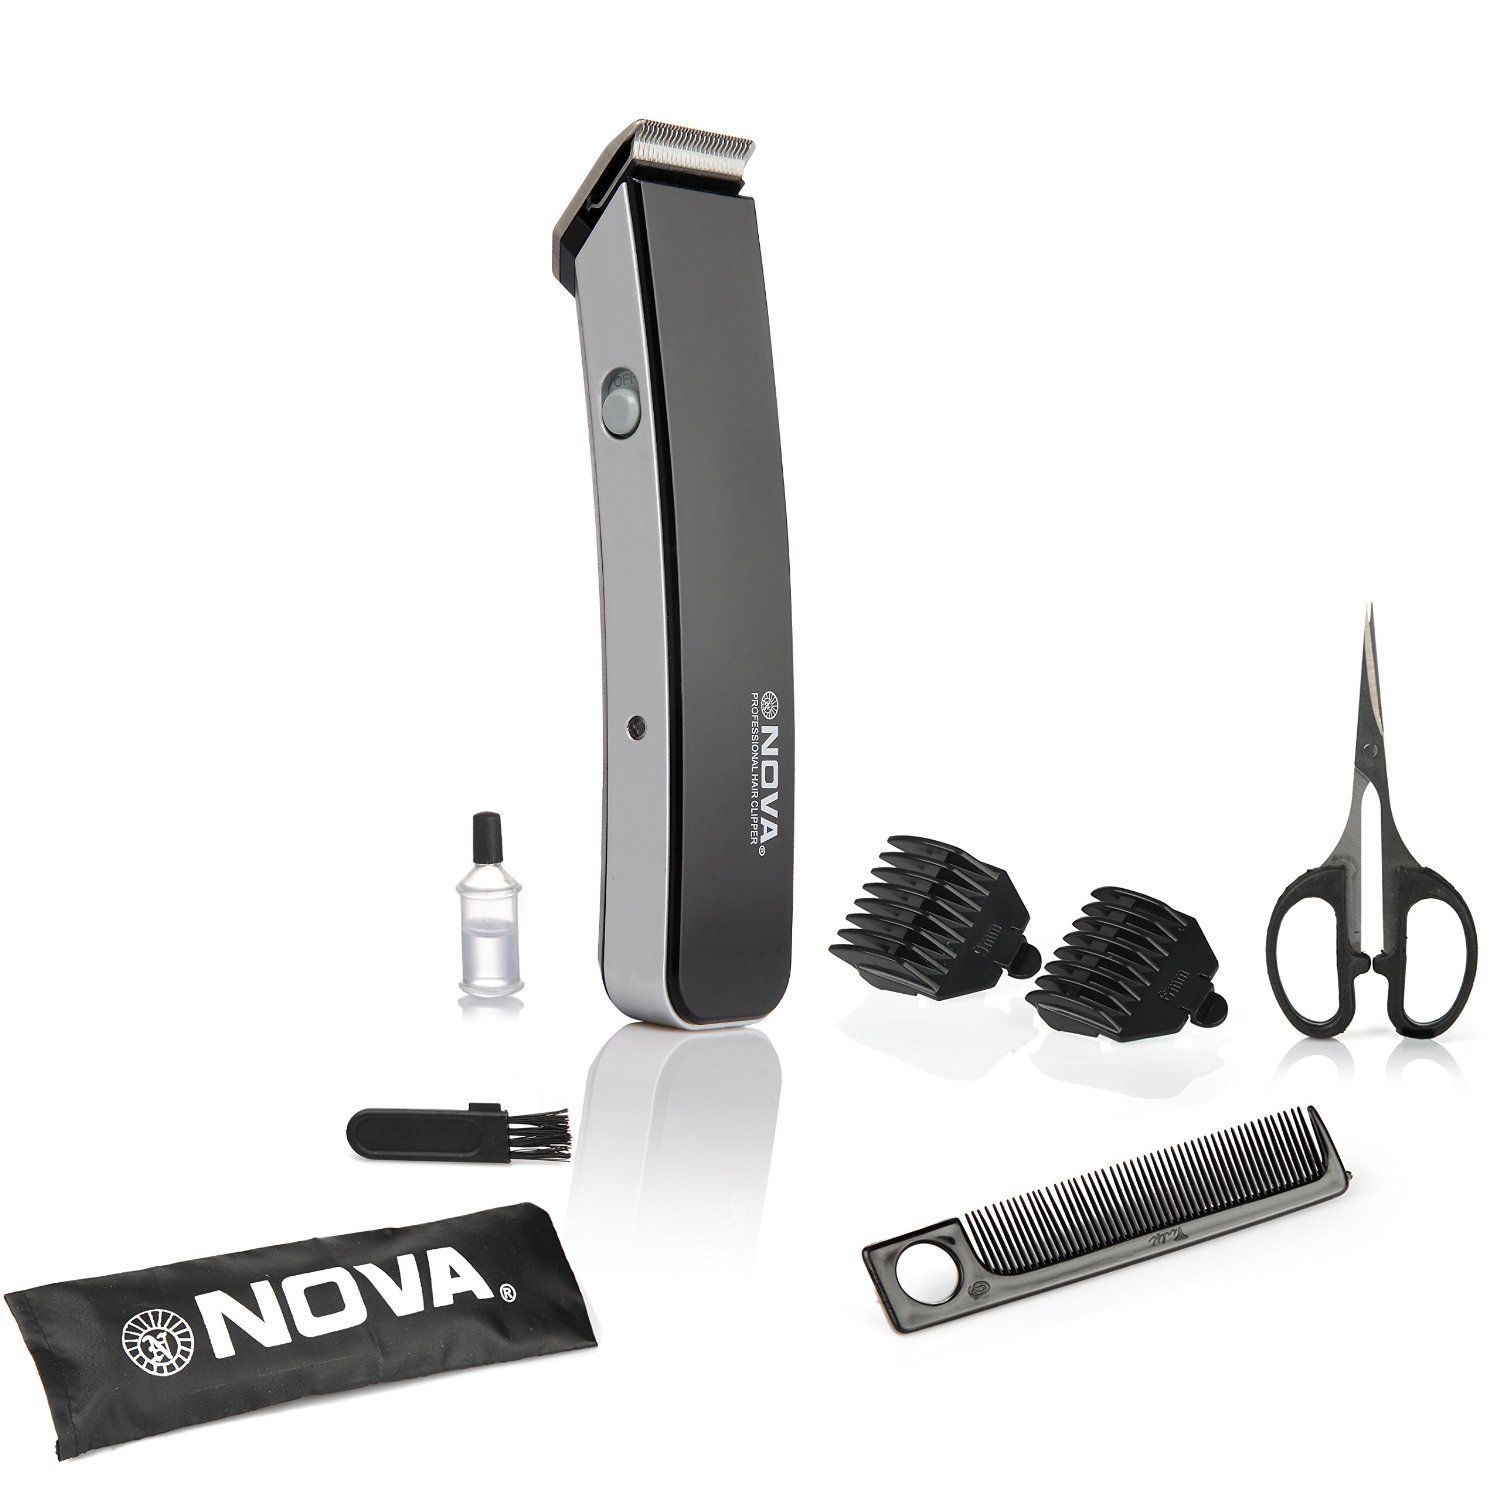 Nova NHT - 1047 Pro Skin Rechargeable Cordless, 30 Minutes Runtime Beard  Trimmer for Men (Black): Buy Nova NHT - 1047 Pro Skin Rechargeable Cordless,  30 Minutes Runtime Beard Trimmer for Men (